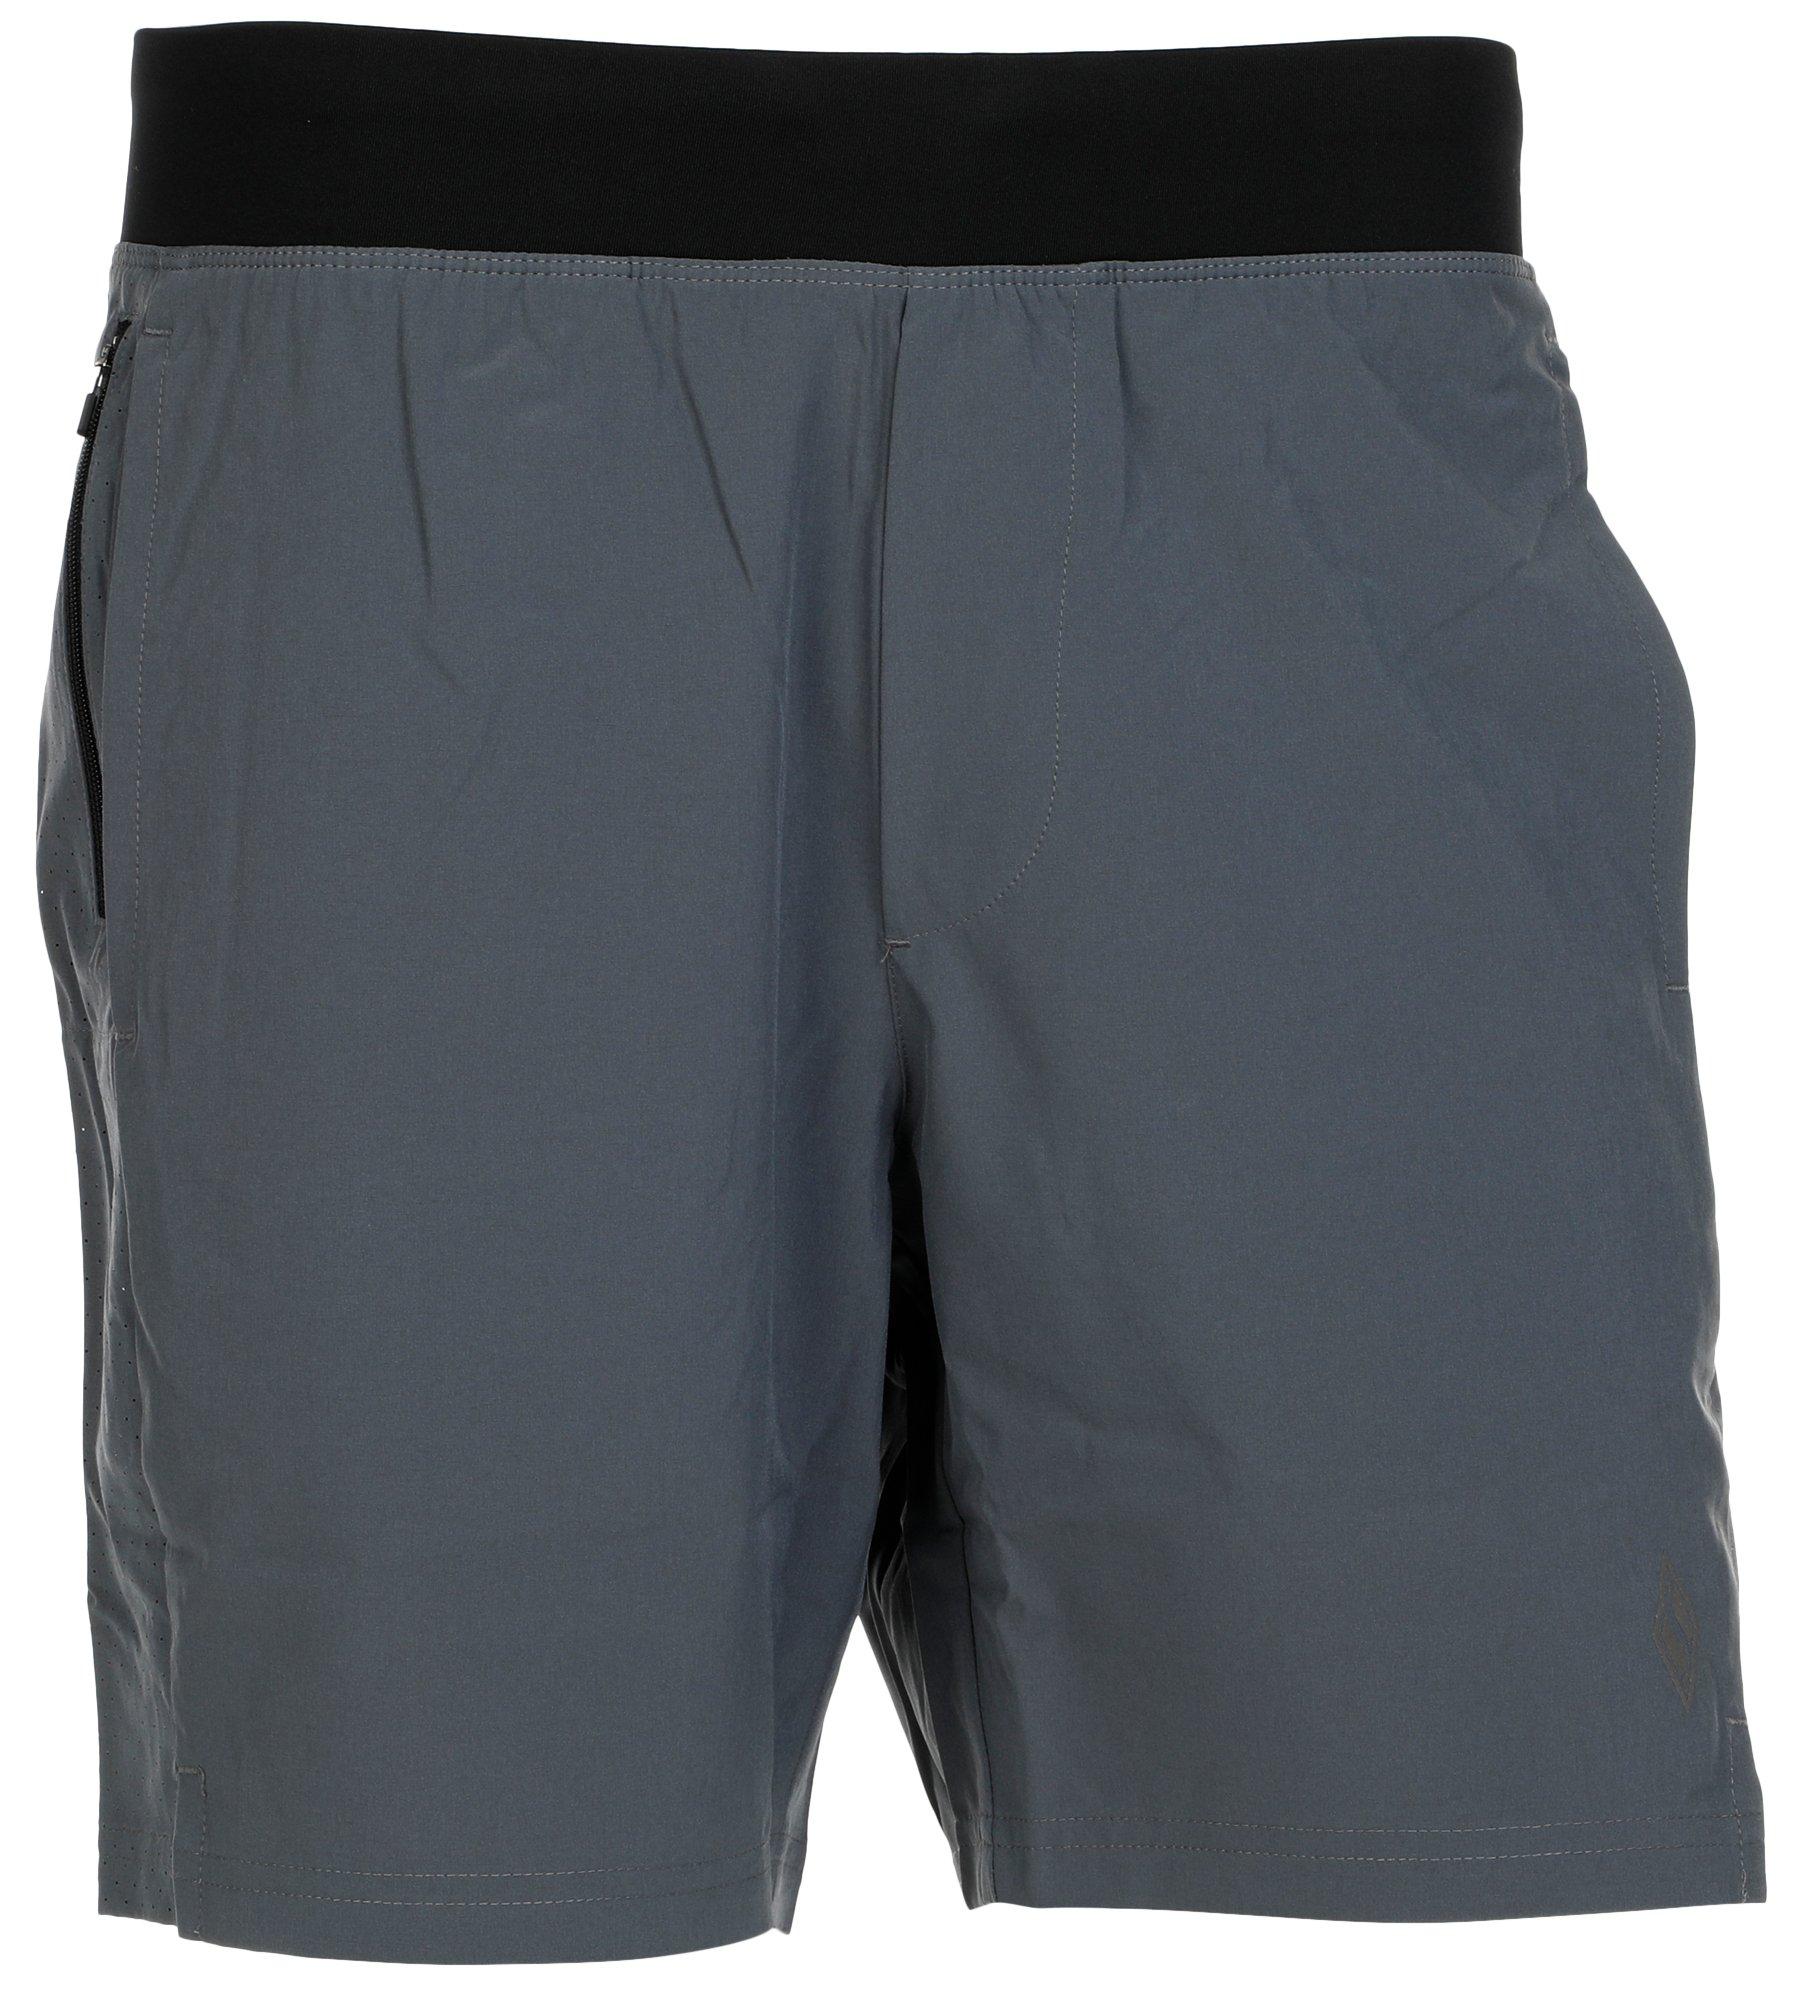 Men's Active Drawstring Shorts